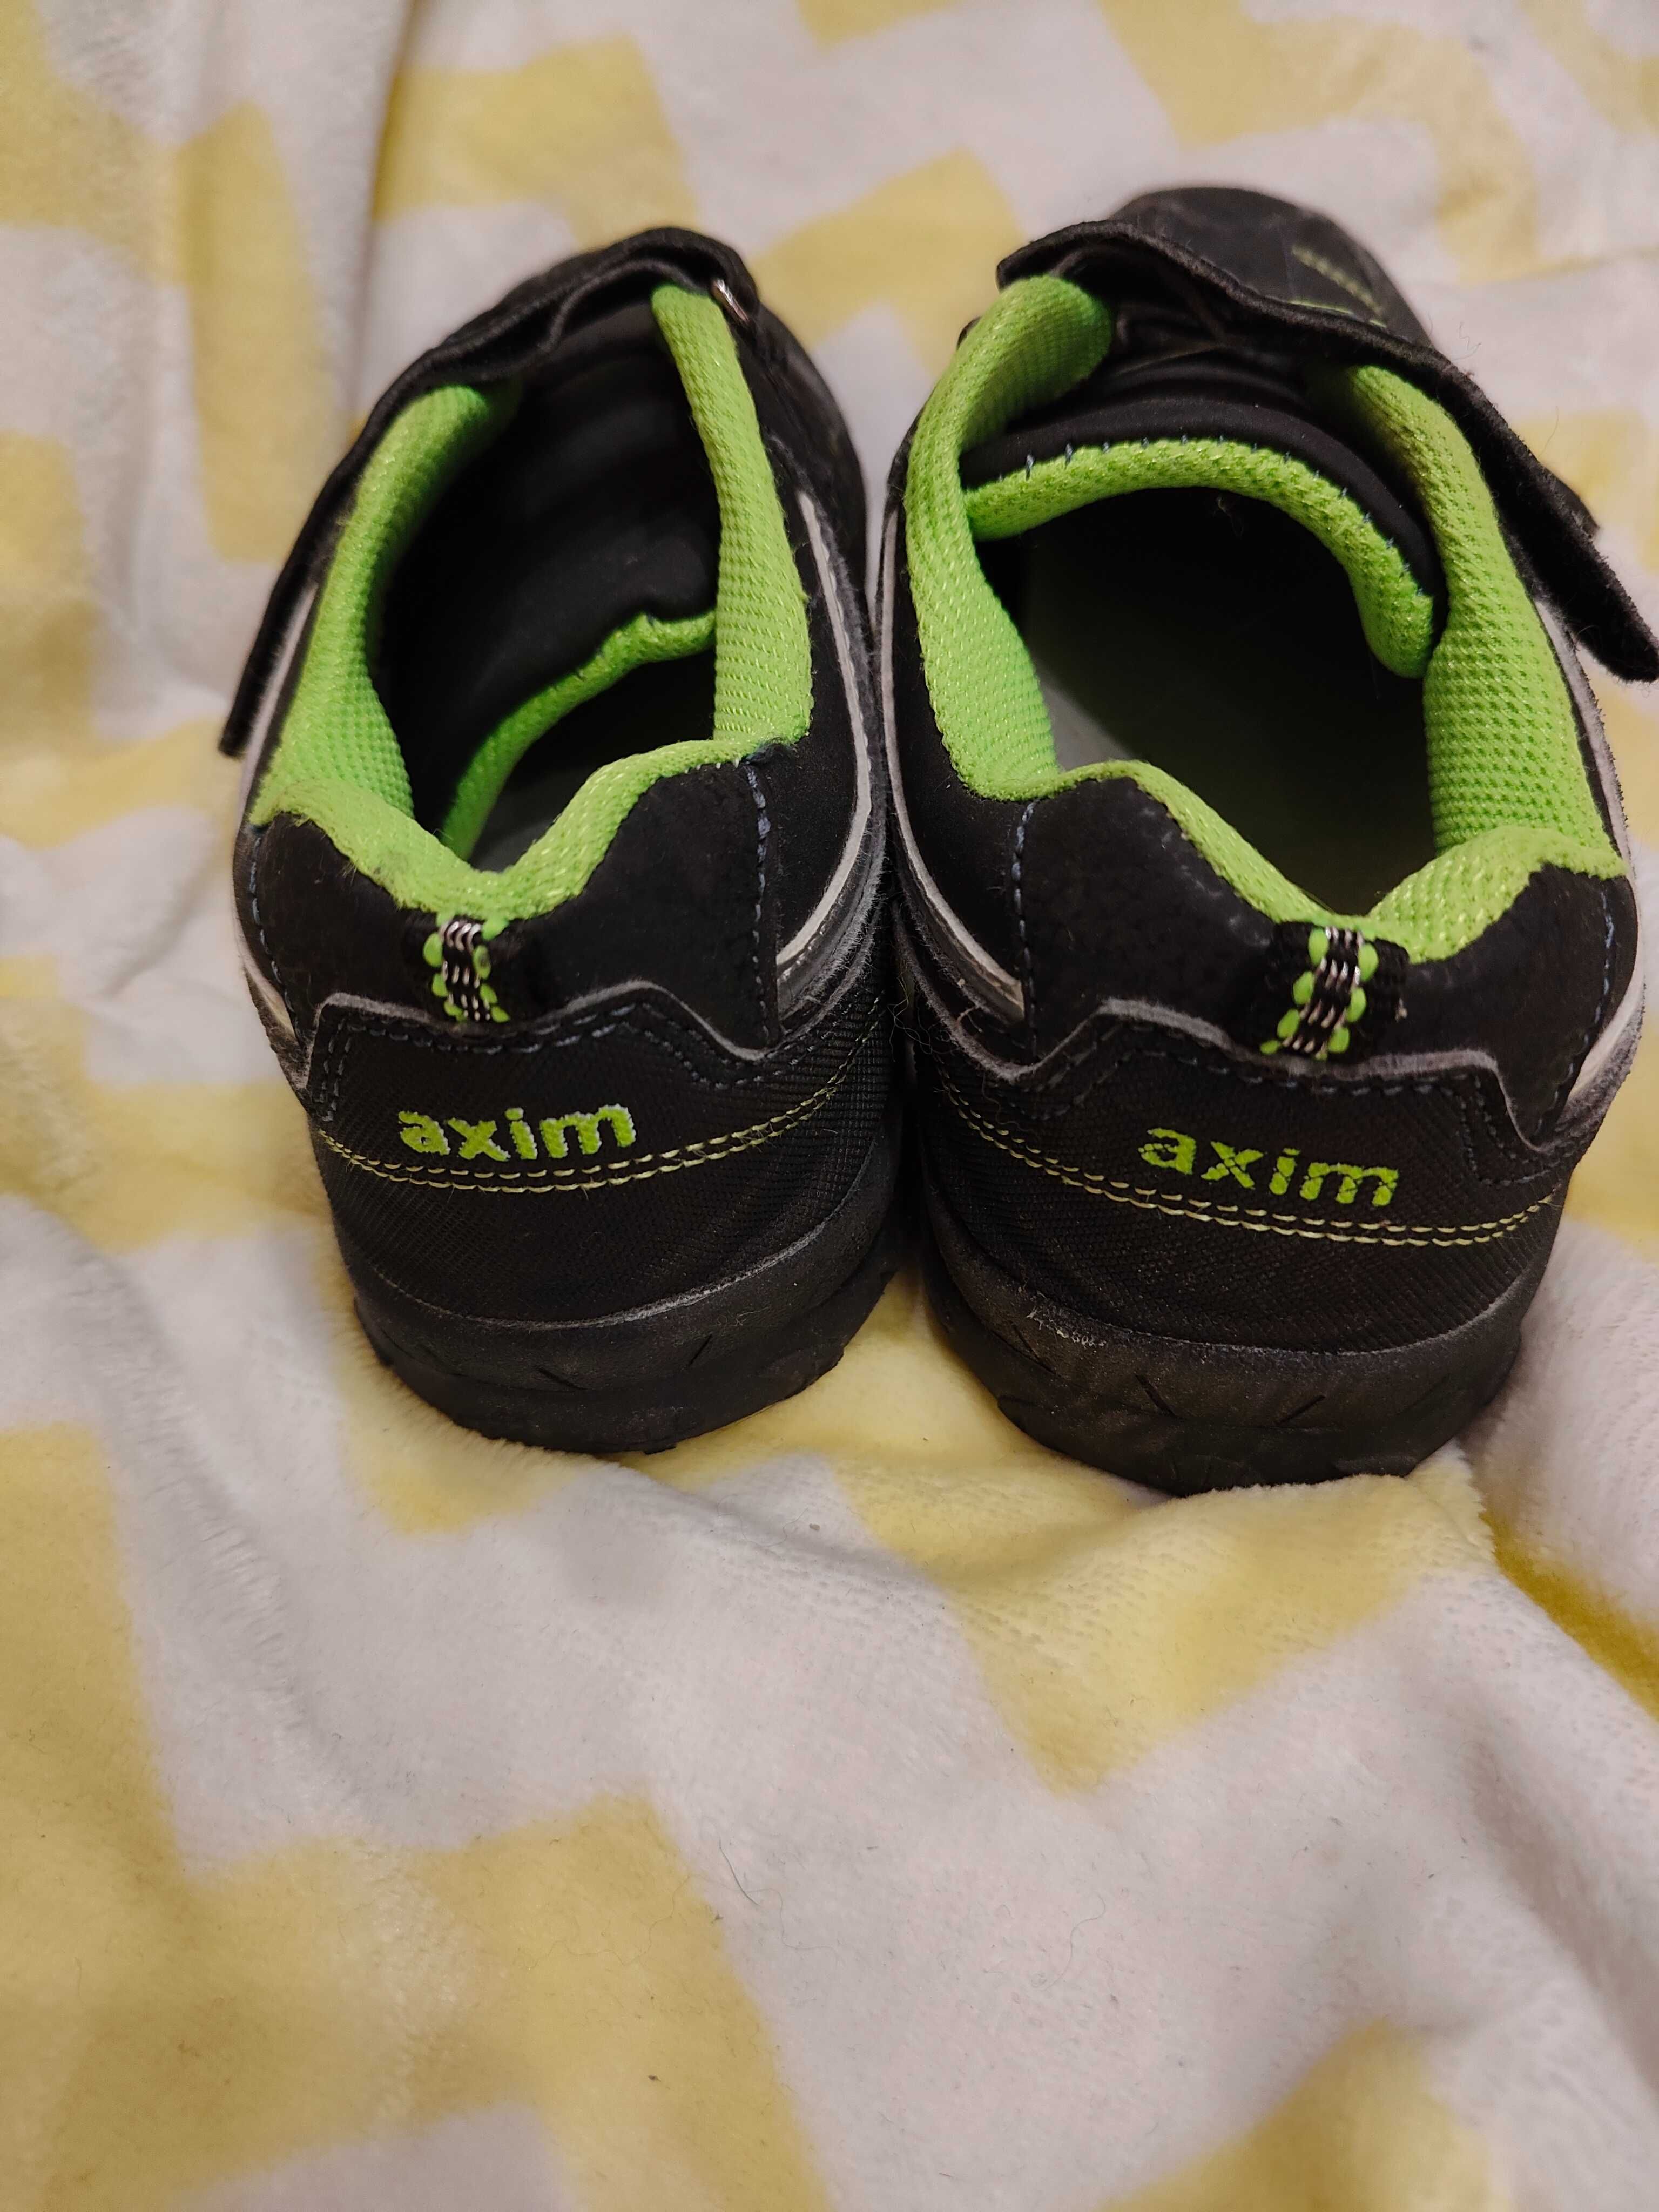 Buty chłopięce, sportowe, adidasy Axim r. 35